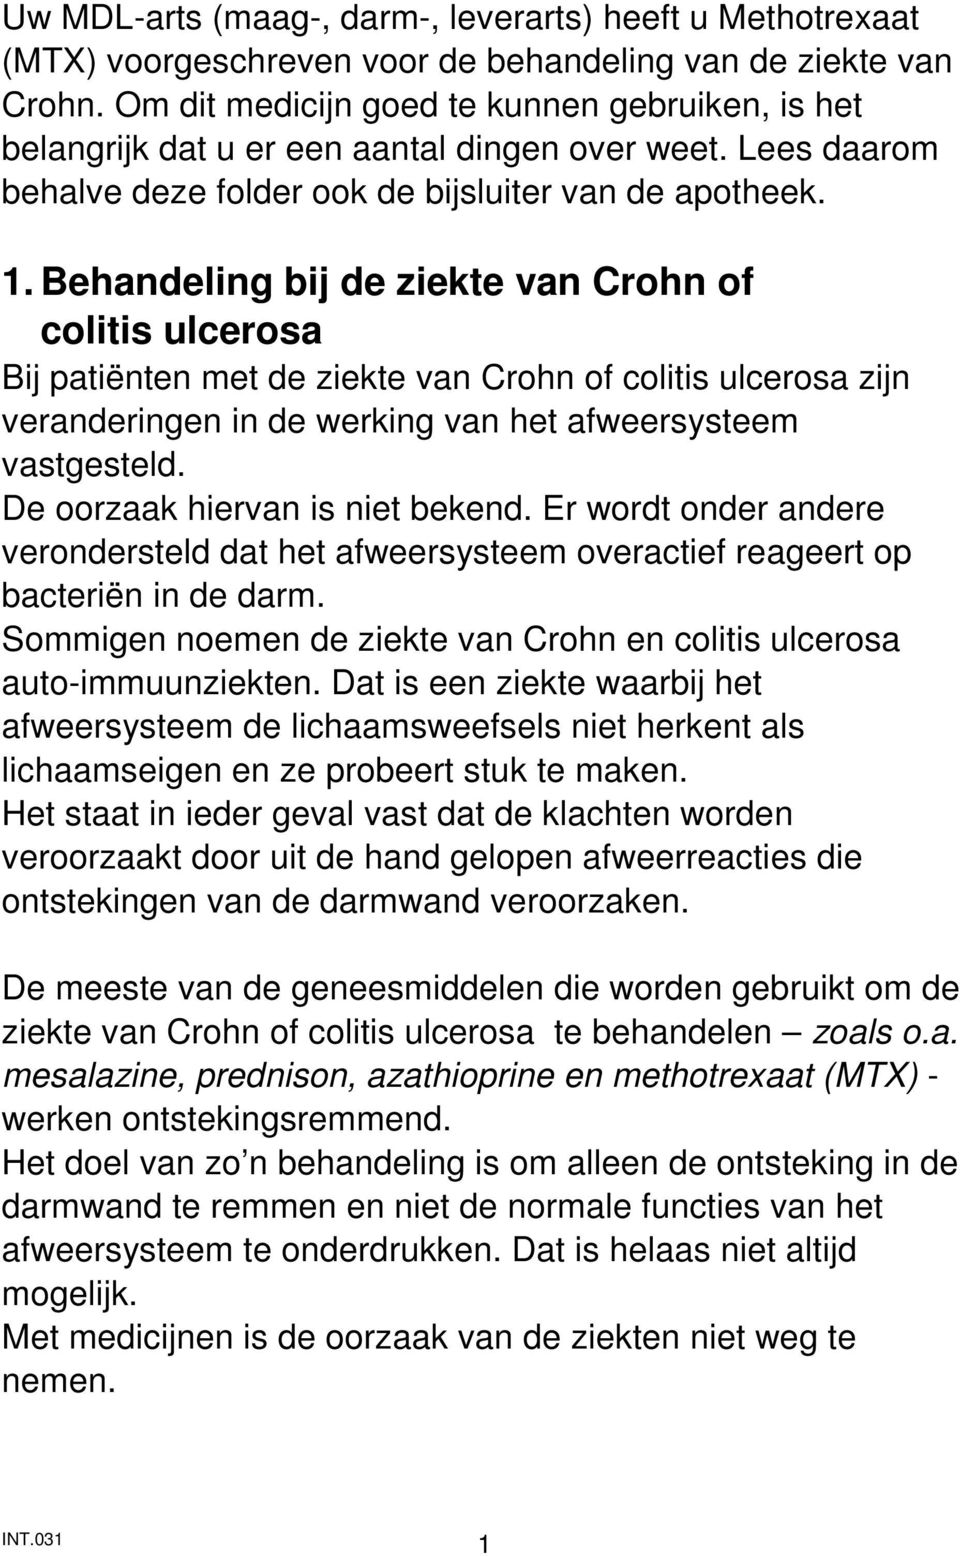 Behandeling bij de ziekte van Crohn of colitis ulcerosa Bij patiënten met de ziekte van Crohn of colitis ulcerosa zijn veranderingen in de werking van het afweersysteem vastgesteld.